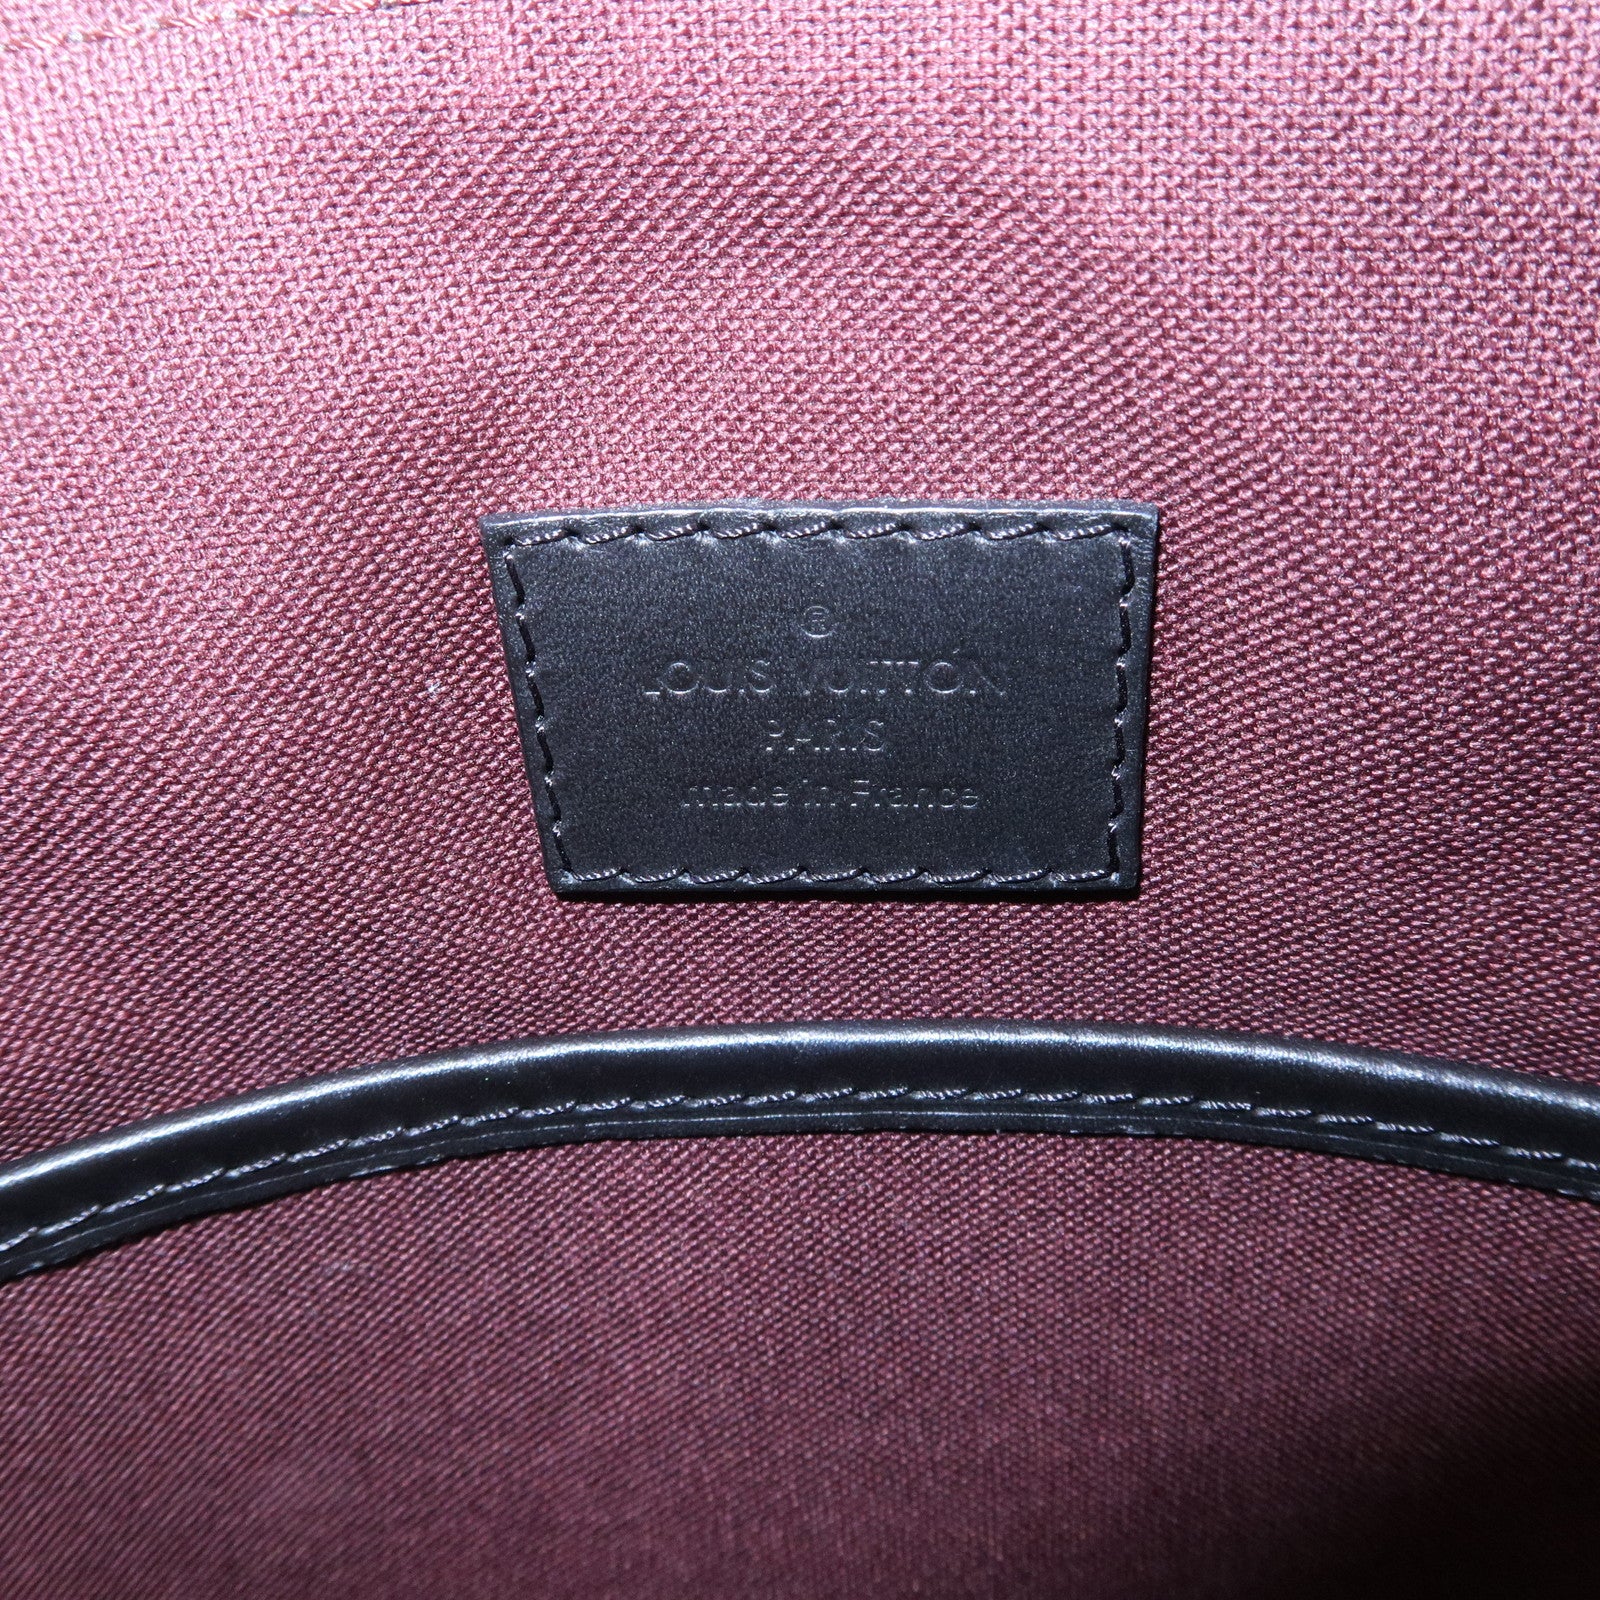 Louis-Vuitton-Monogram-Macassar-Bass-PM-Shoulder-Bag-M56717 – dct